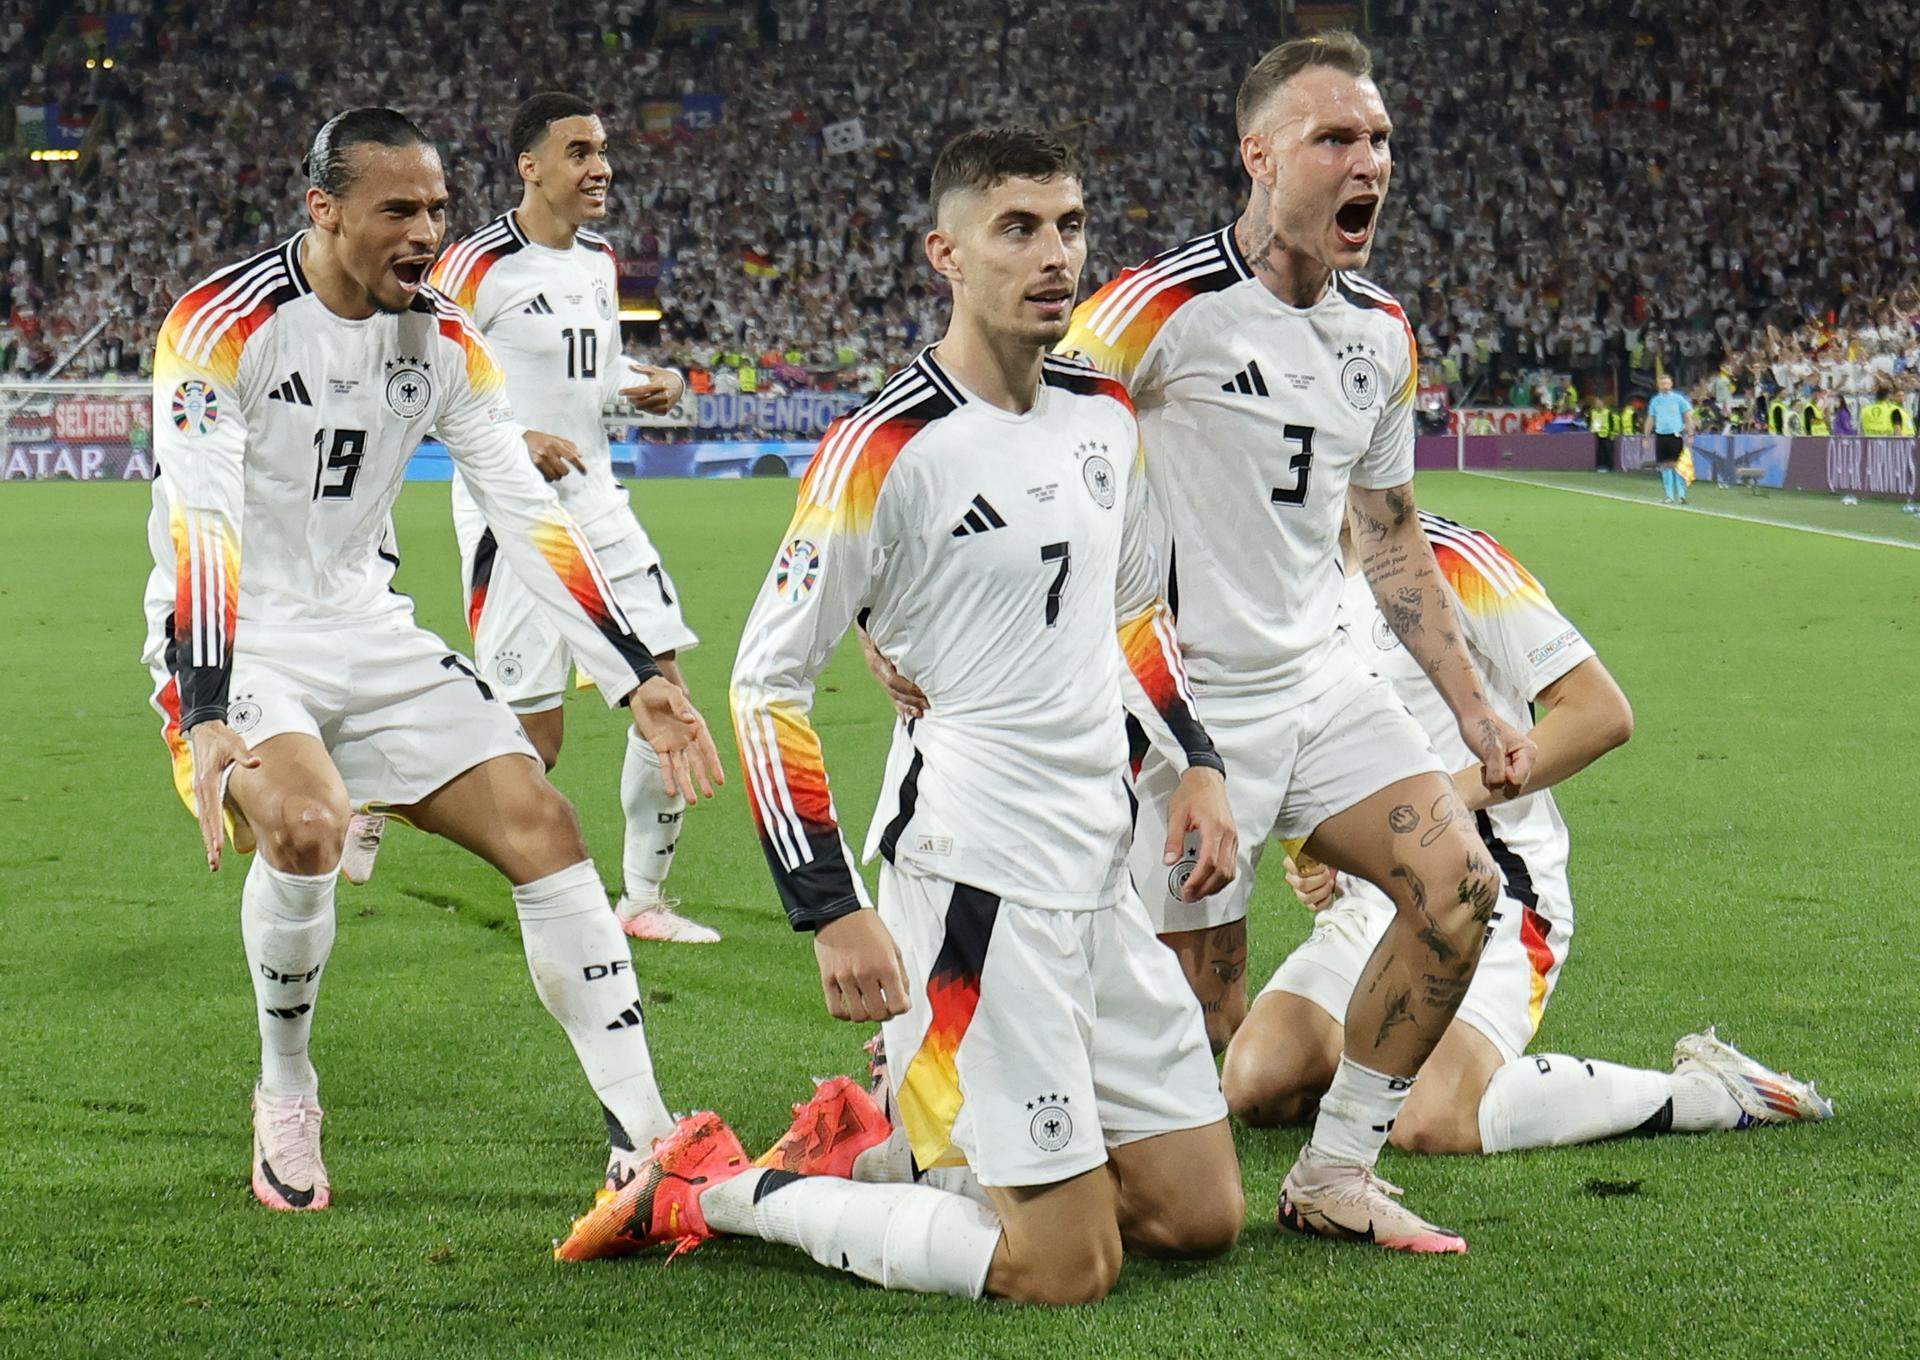 Alemania fulmina a Dinamarca y apuntala su condición de favorita (2-0)